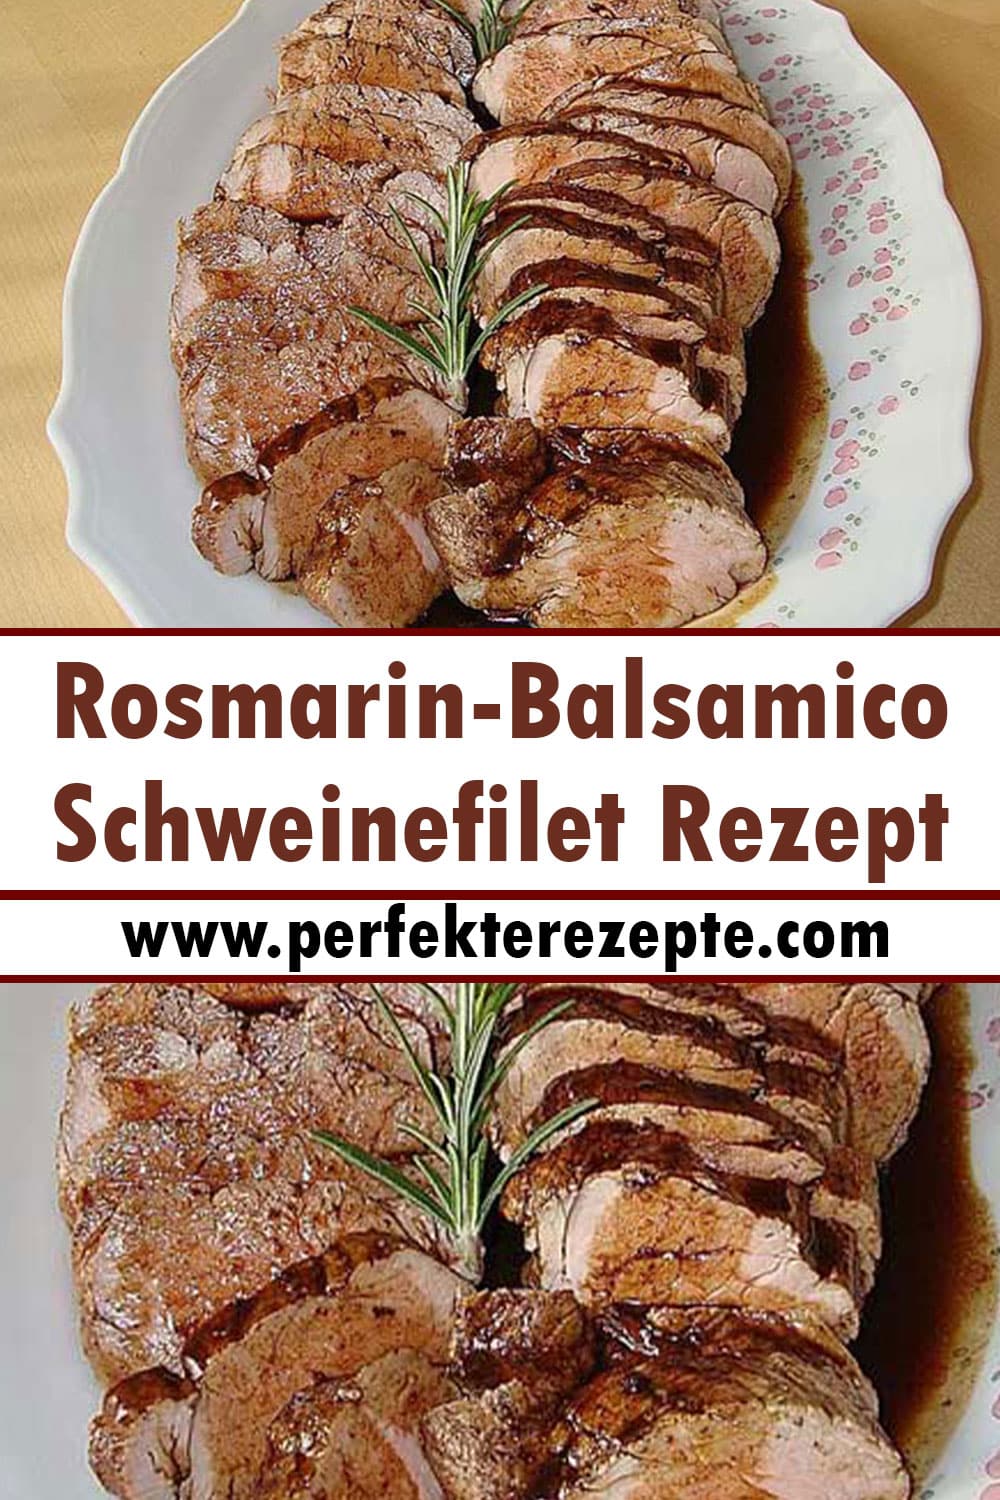 Rosmarin-Balsamico-Schweinefilet Rezept